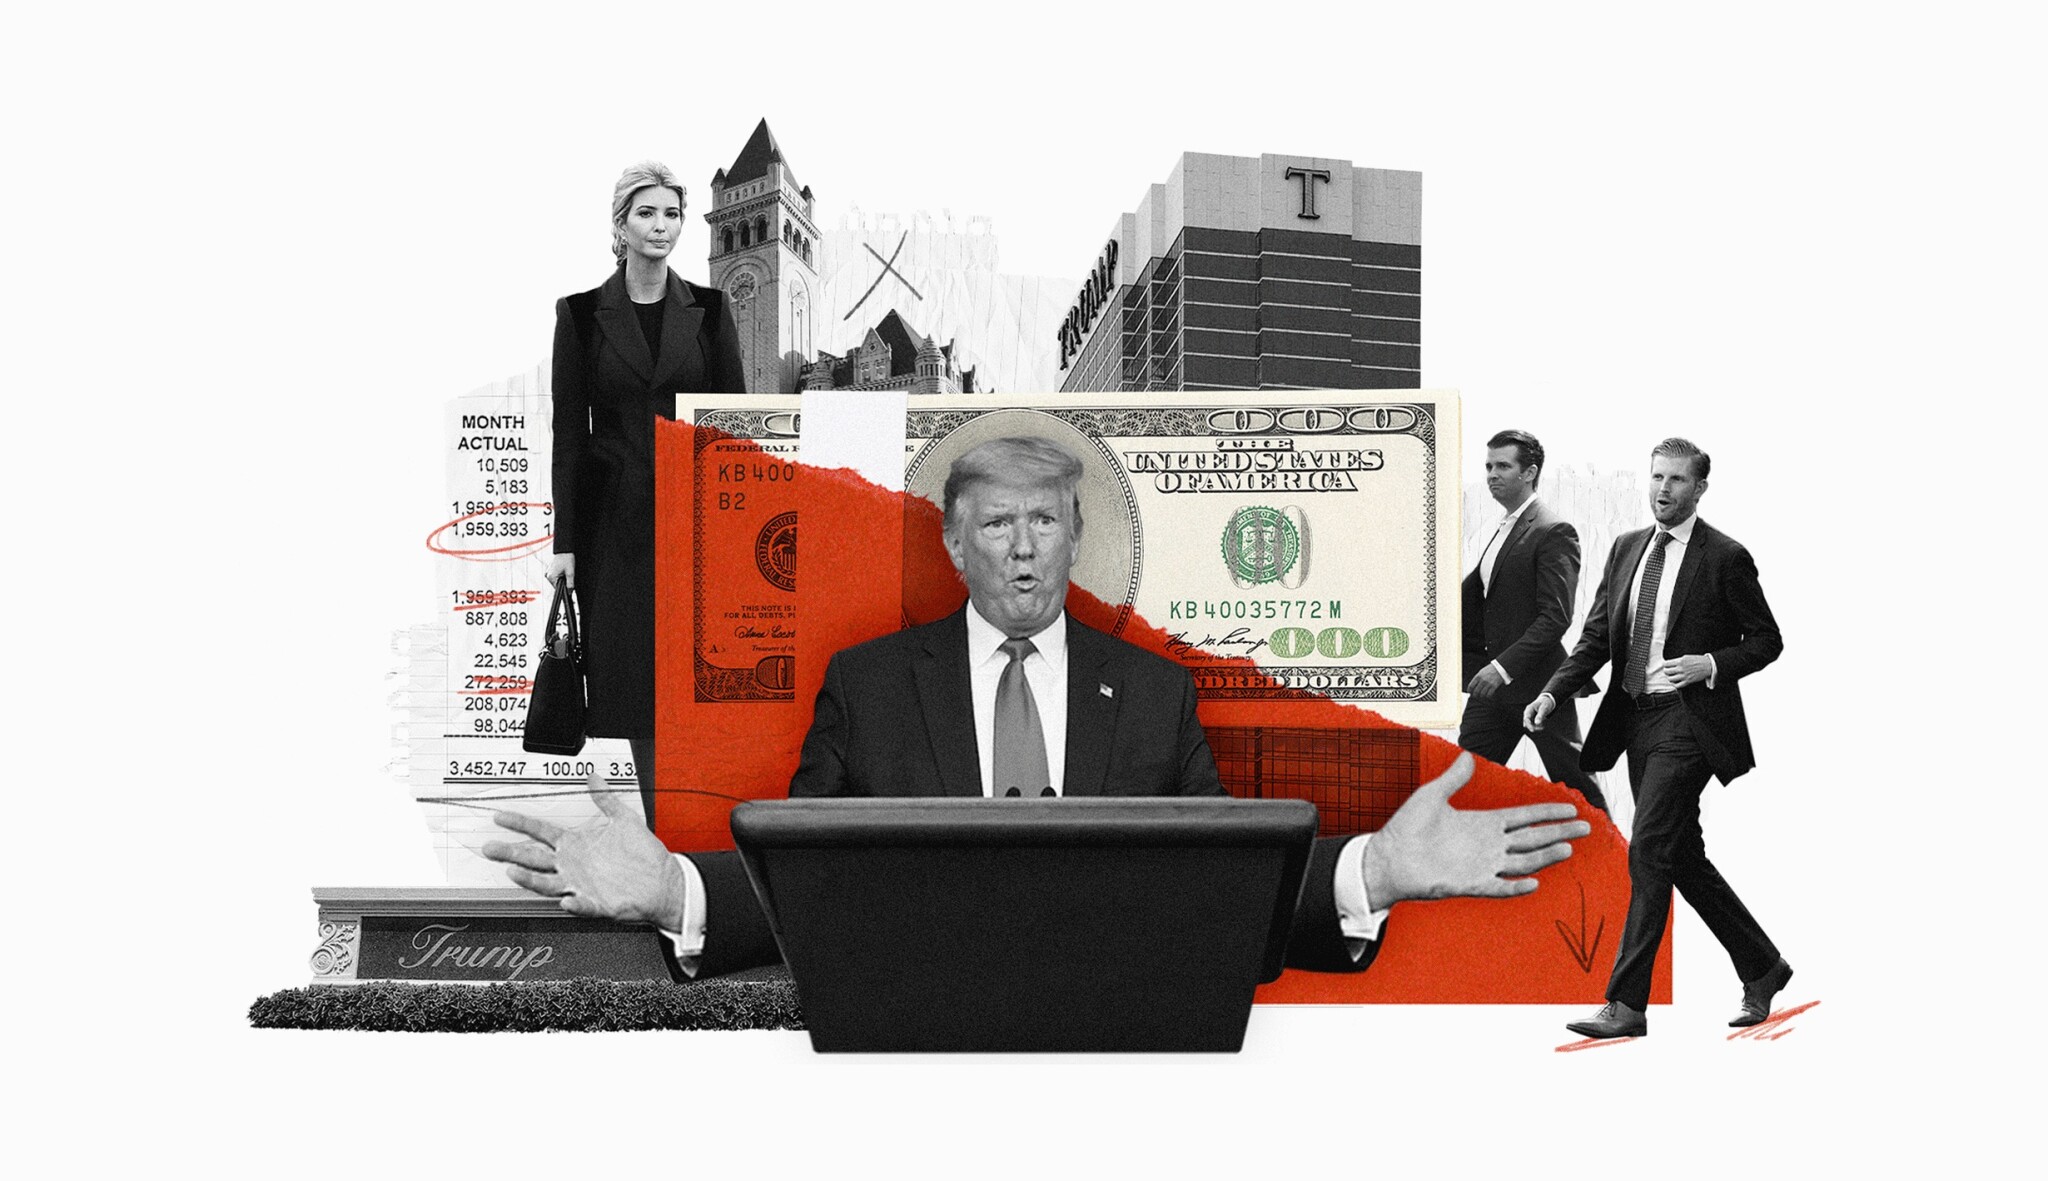 Císař je nahý. Trump prodělal na hotelech stamiliony, bankrot odvrátil podezřelými půjčkami